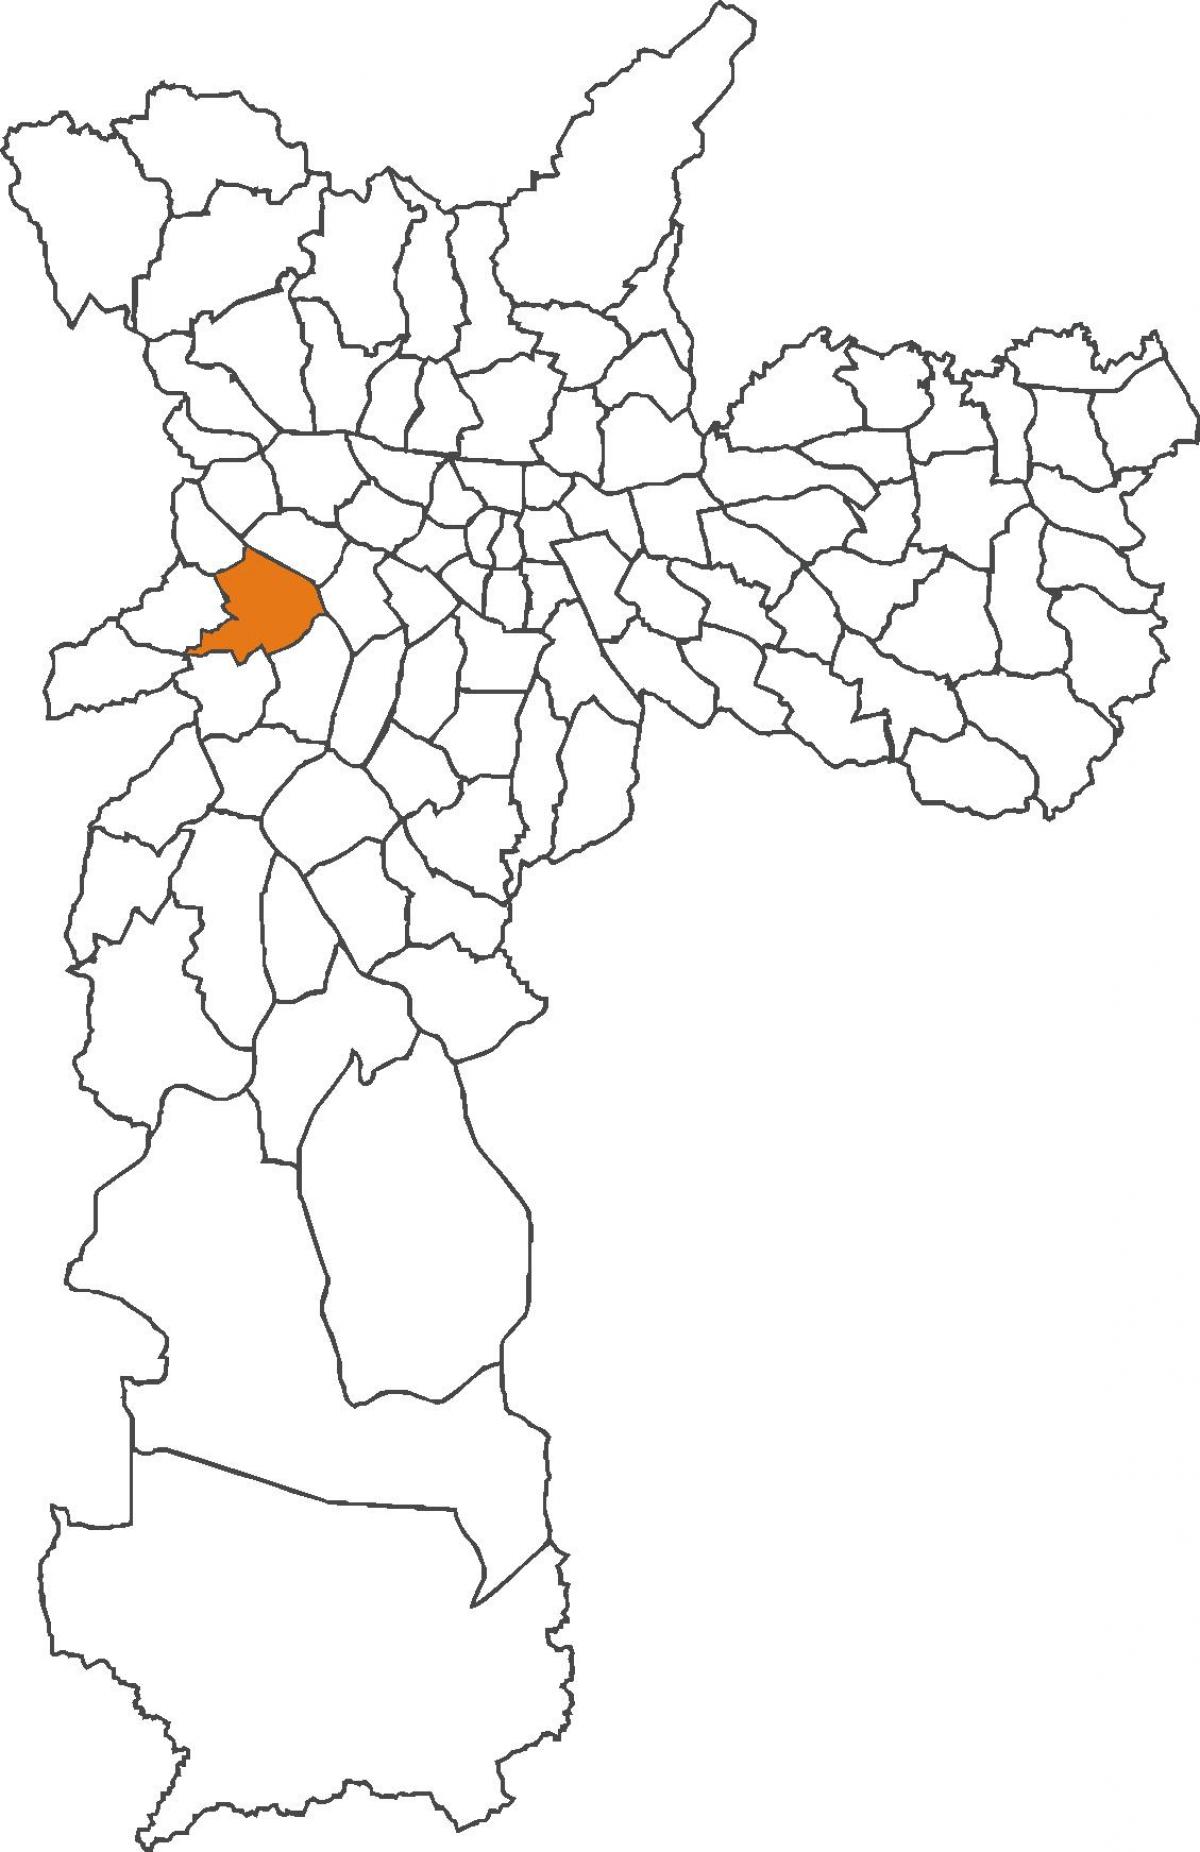 نقشہ کے Butantã ضلع